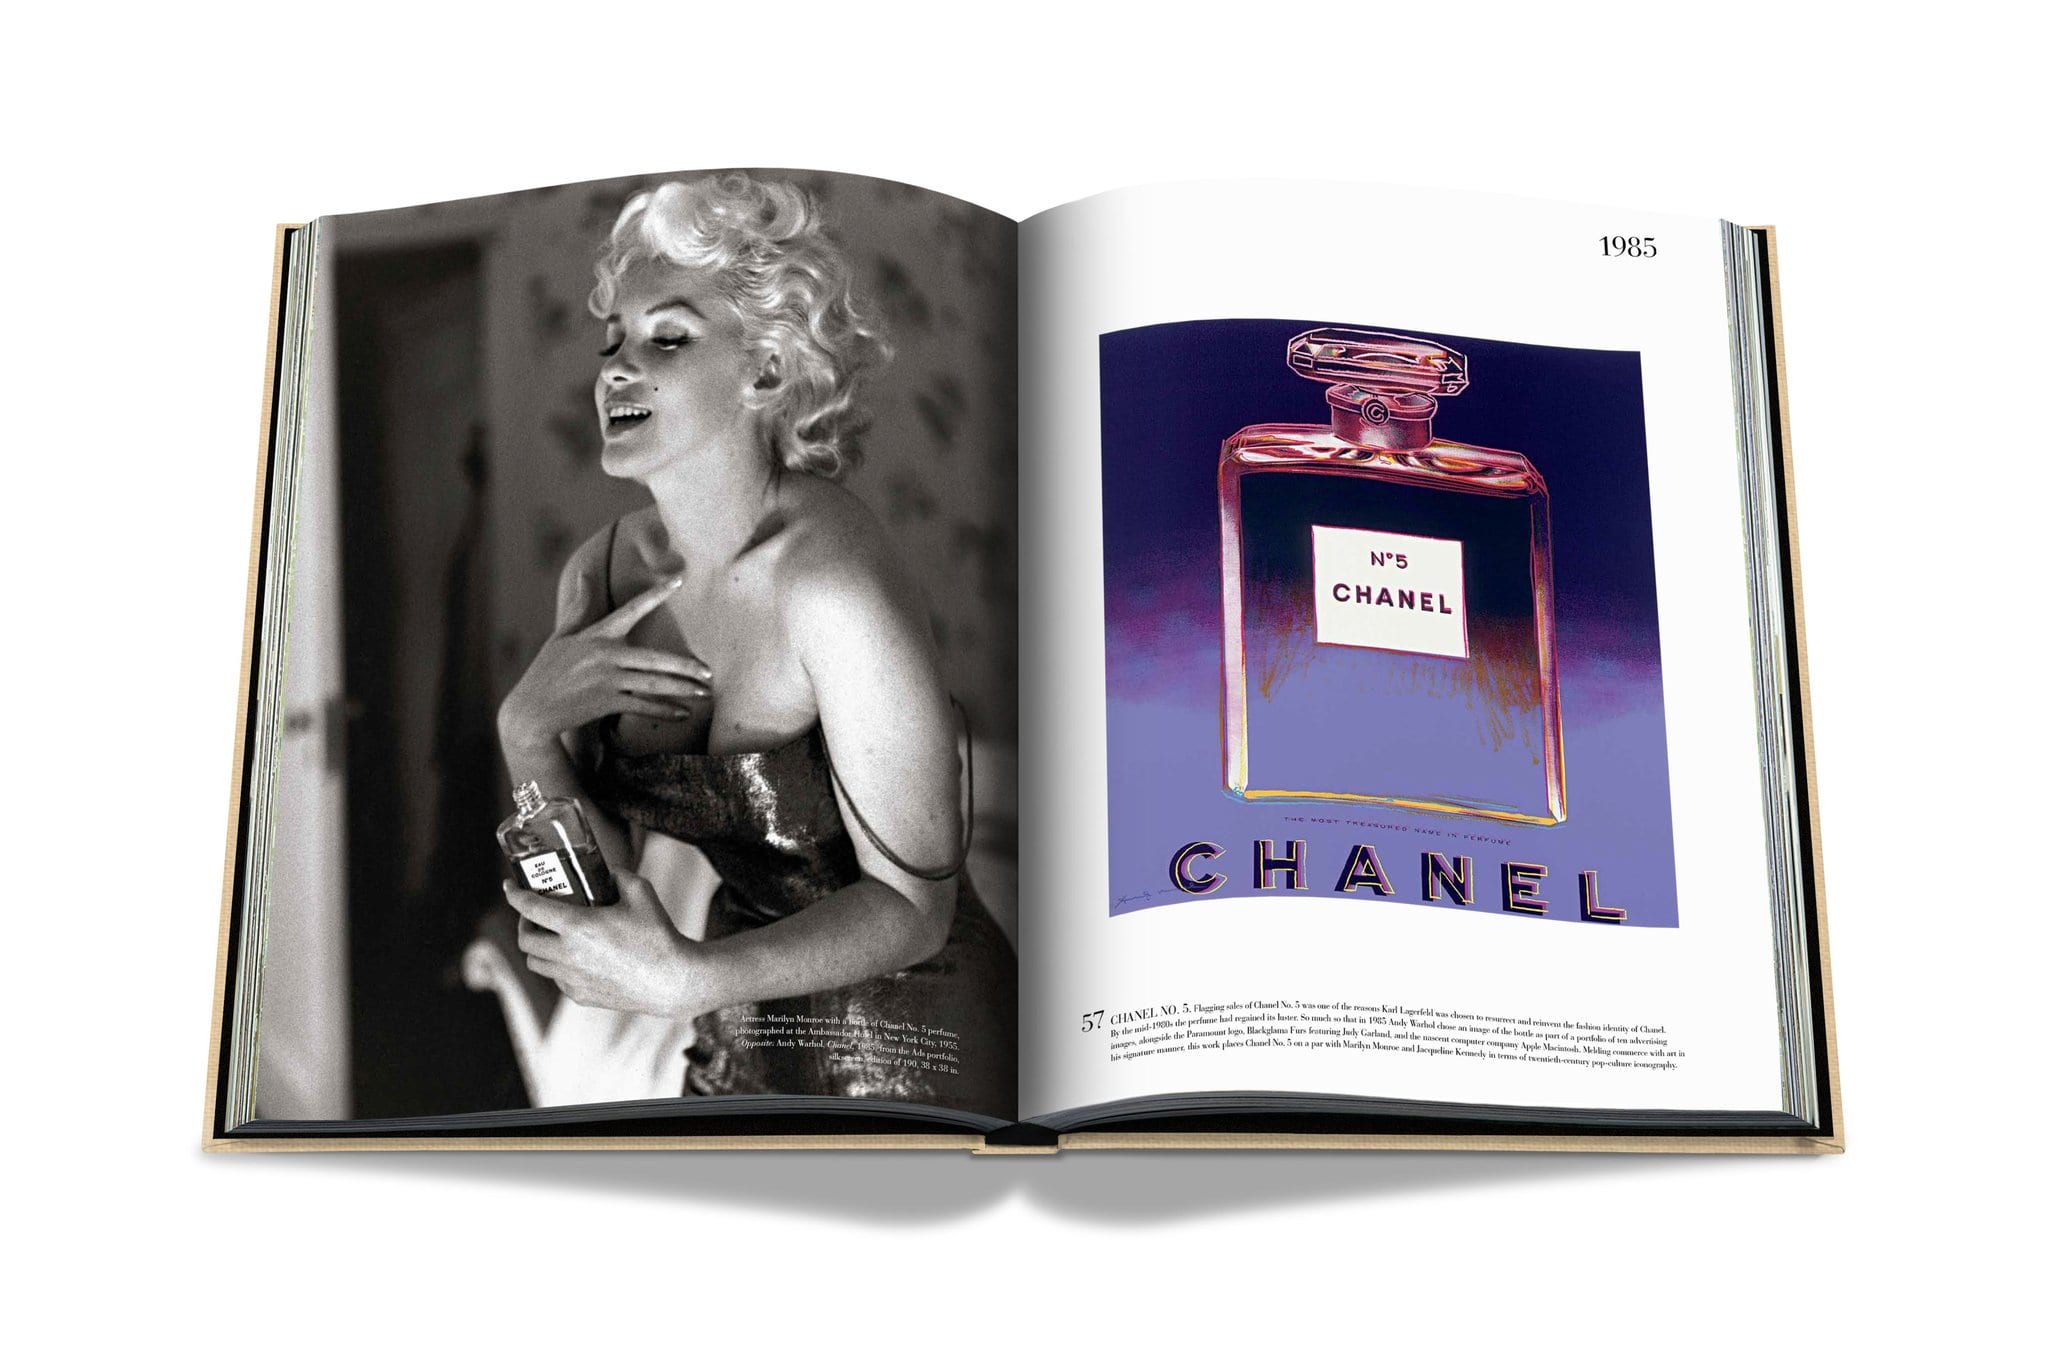 Assouline L'impossibile raccolta di Chanel